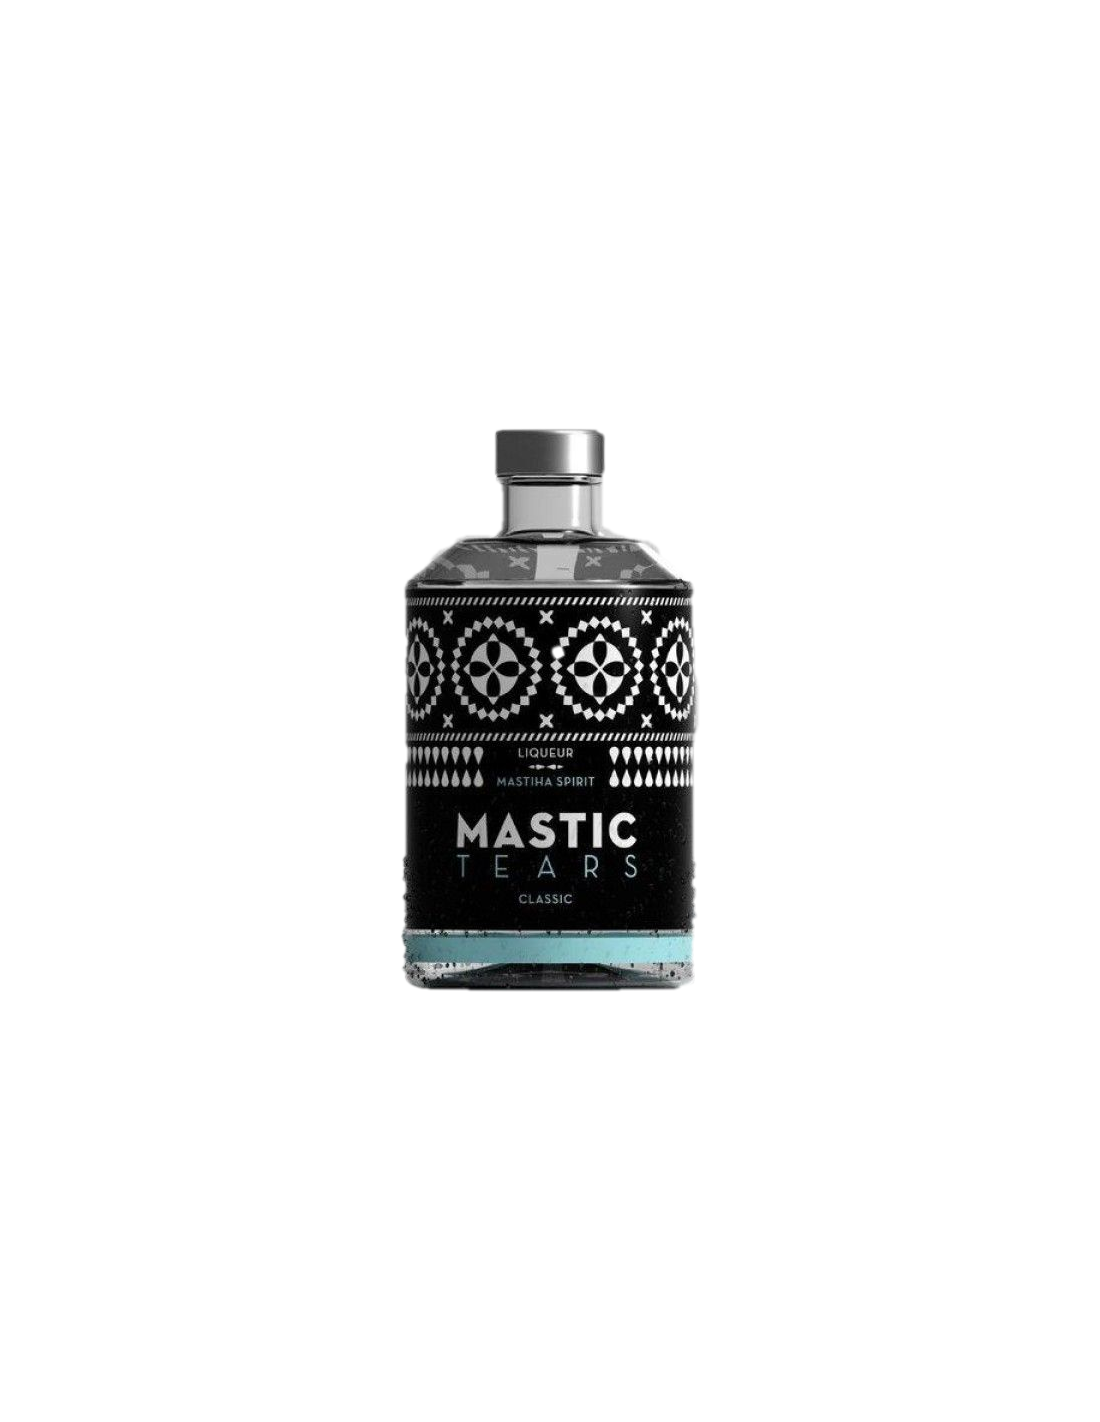 Lichior Mastic Tears Clasic 24% alc., 0.2L, Grecia alcooldiscount.ro